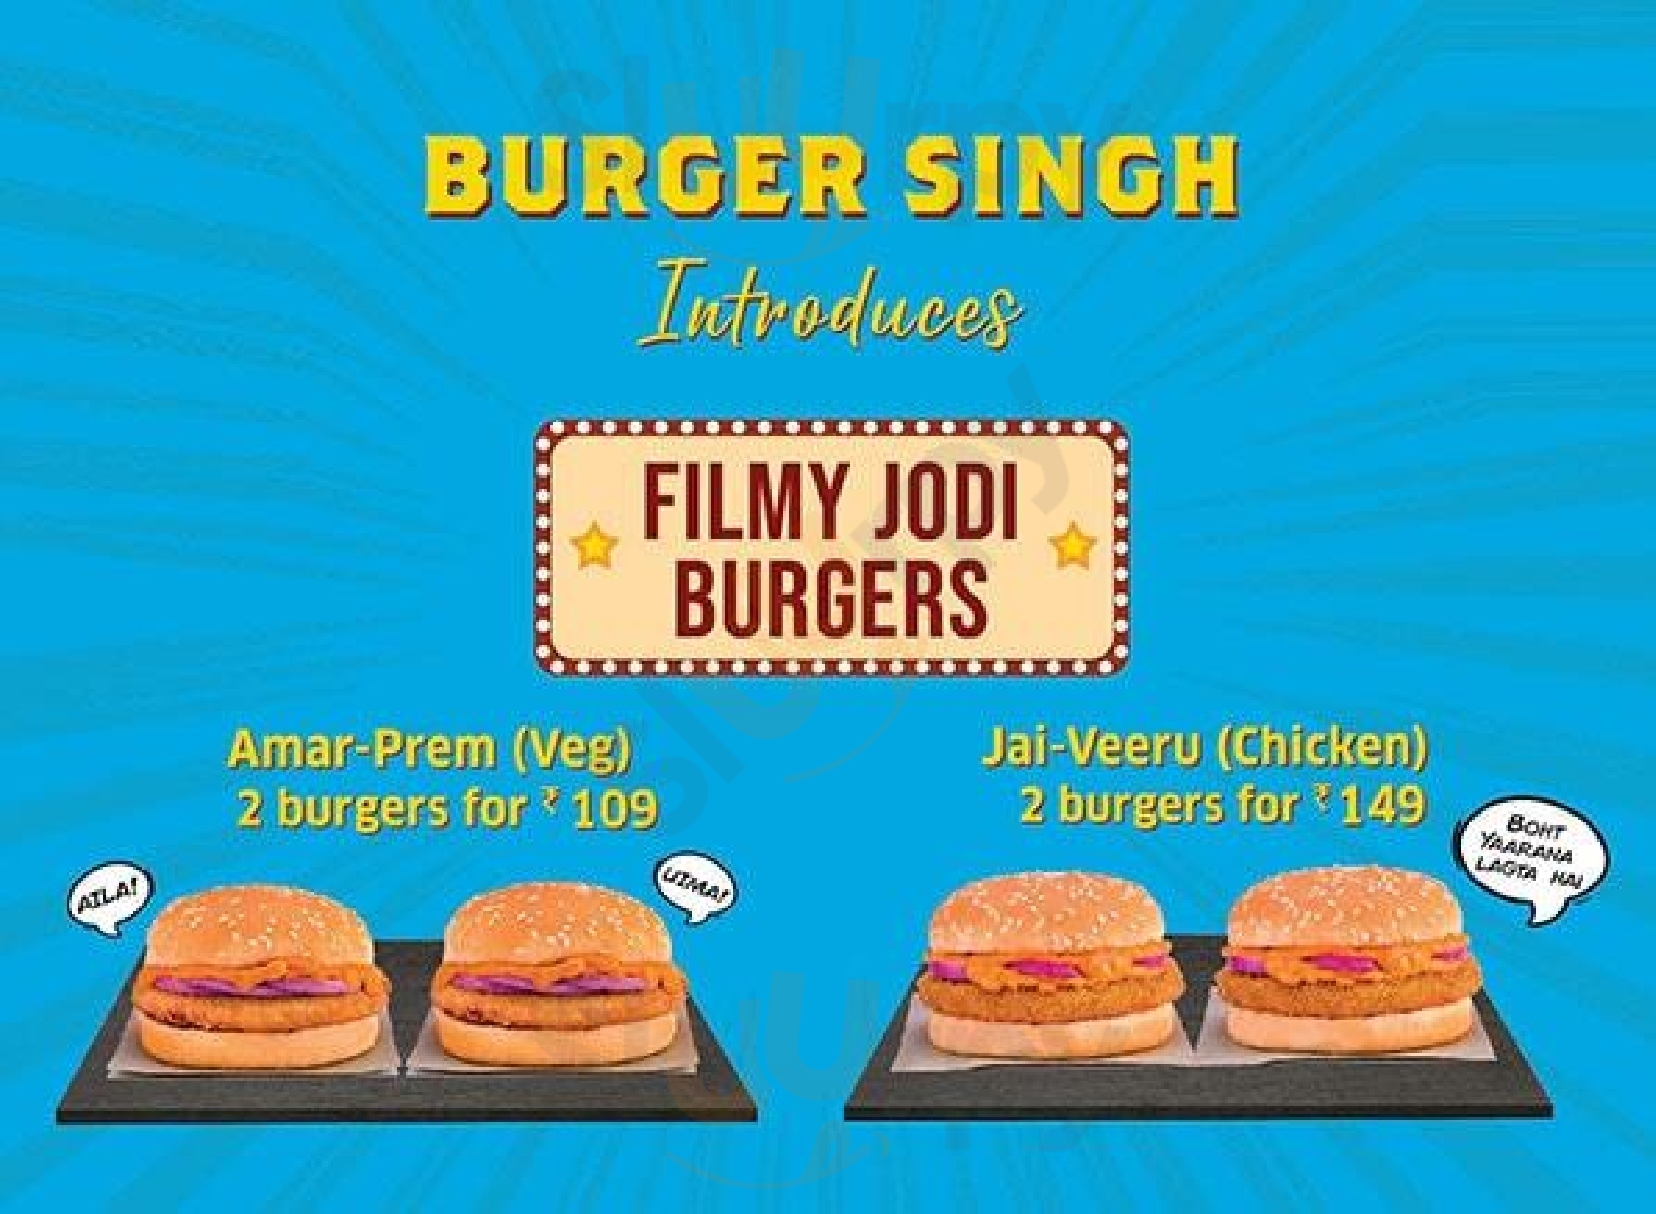 Burger Singh New Delhi Menu - 1